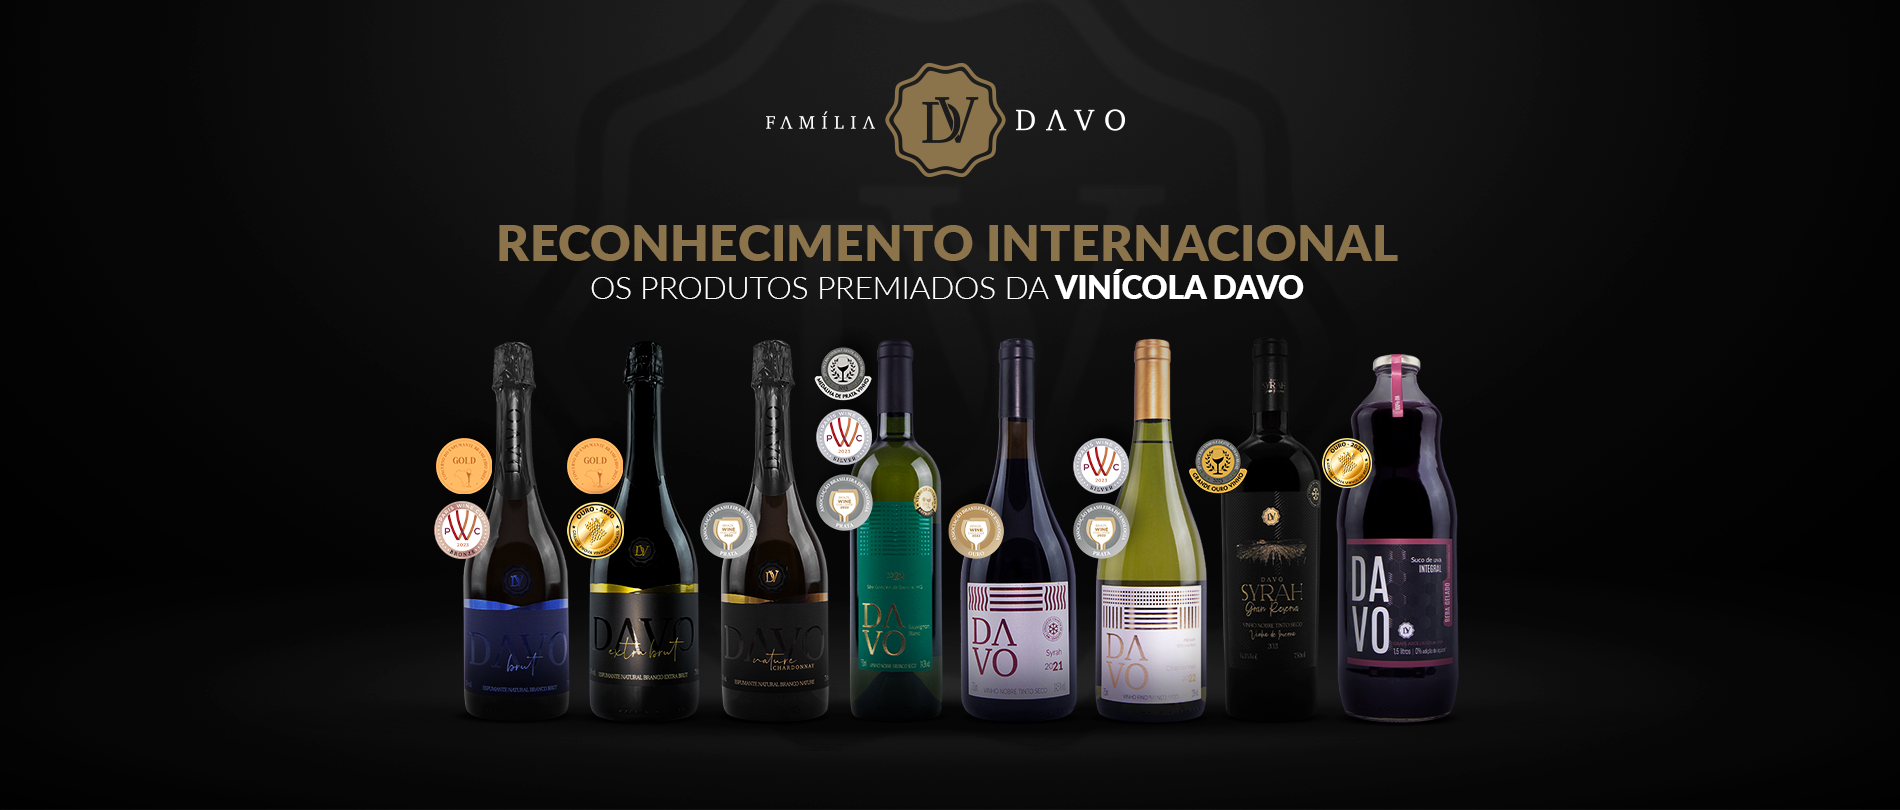 Os produtos premiados da Vinícola Davo